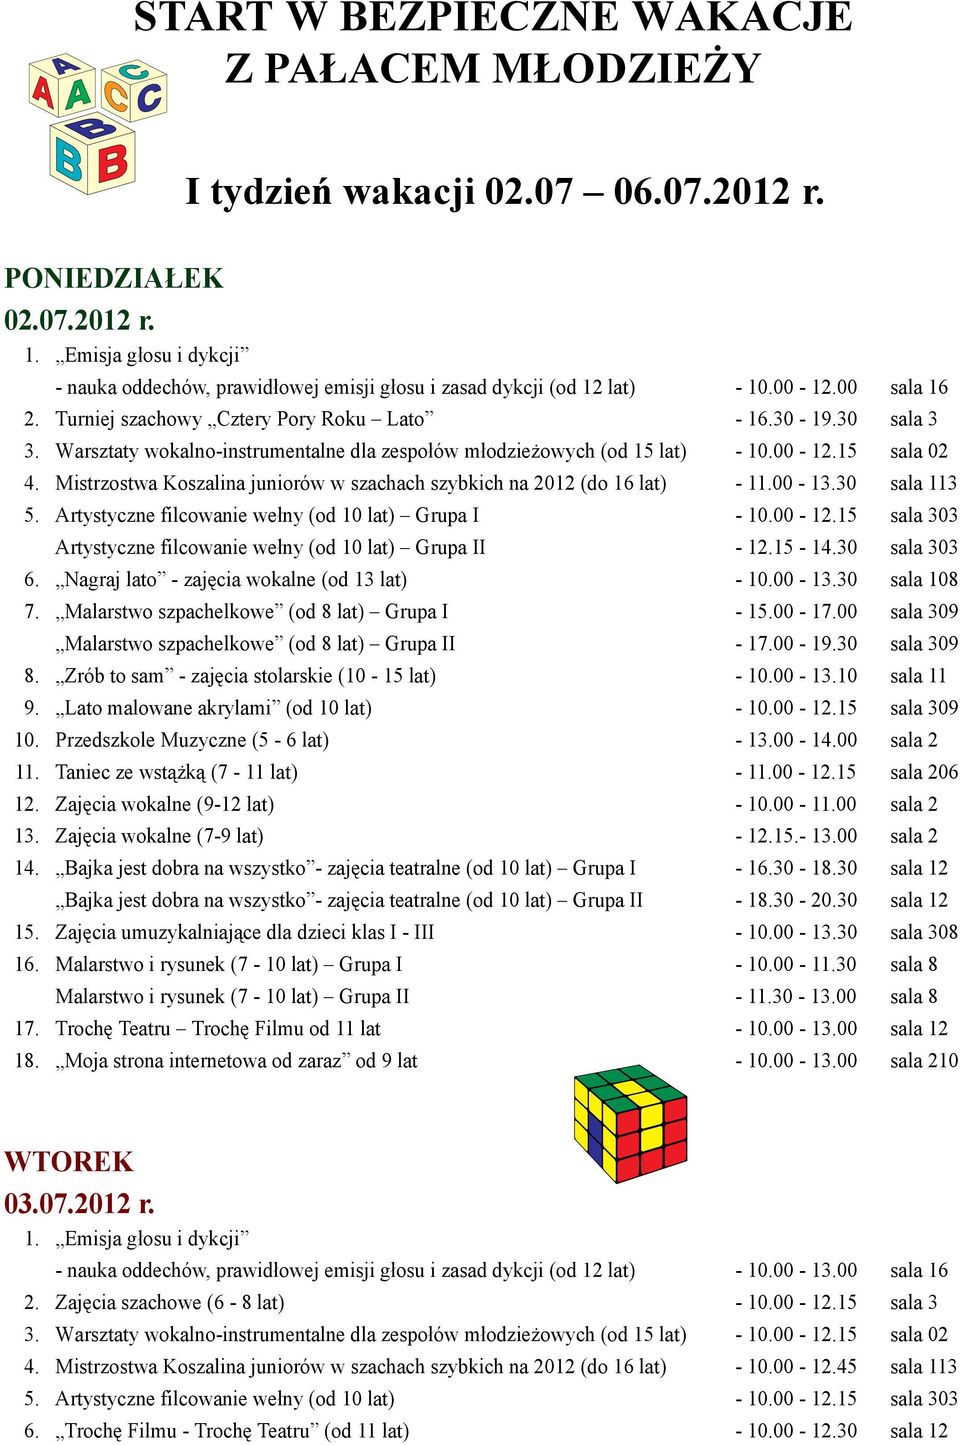 Mistrzostwa Koszalina juniorów w szachach szybkich na 2012 (do 16 lat) - 11.00-13.30 sala 113 5. Artystyczne filcowanie wełny (od 10 lat) Grupa I - 10.00-12.